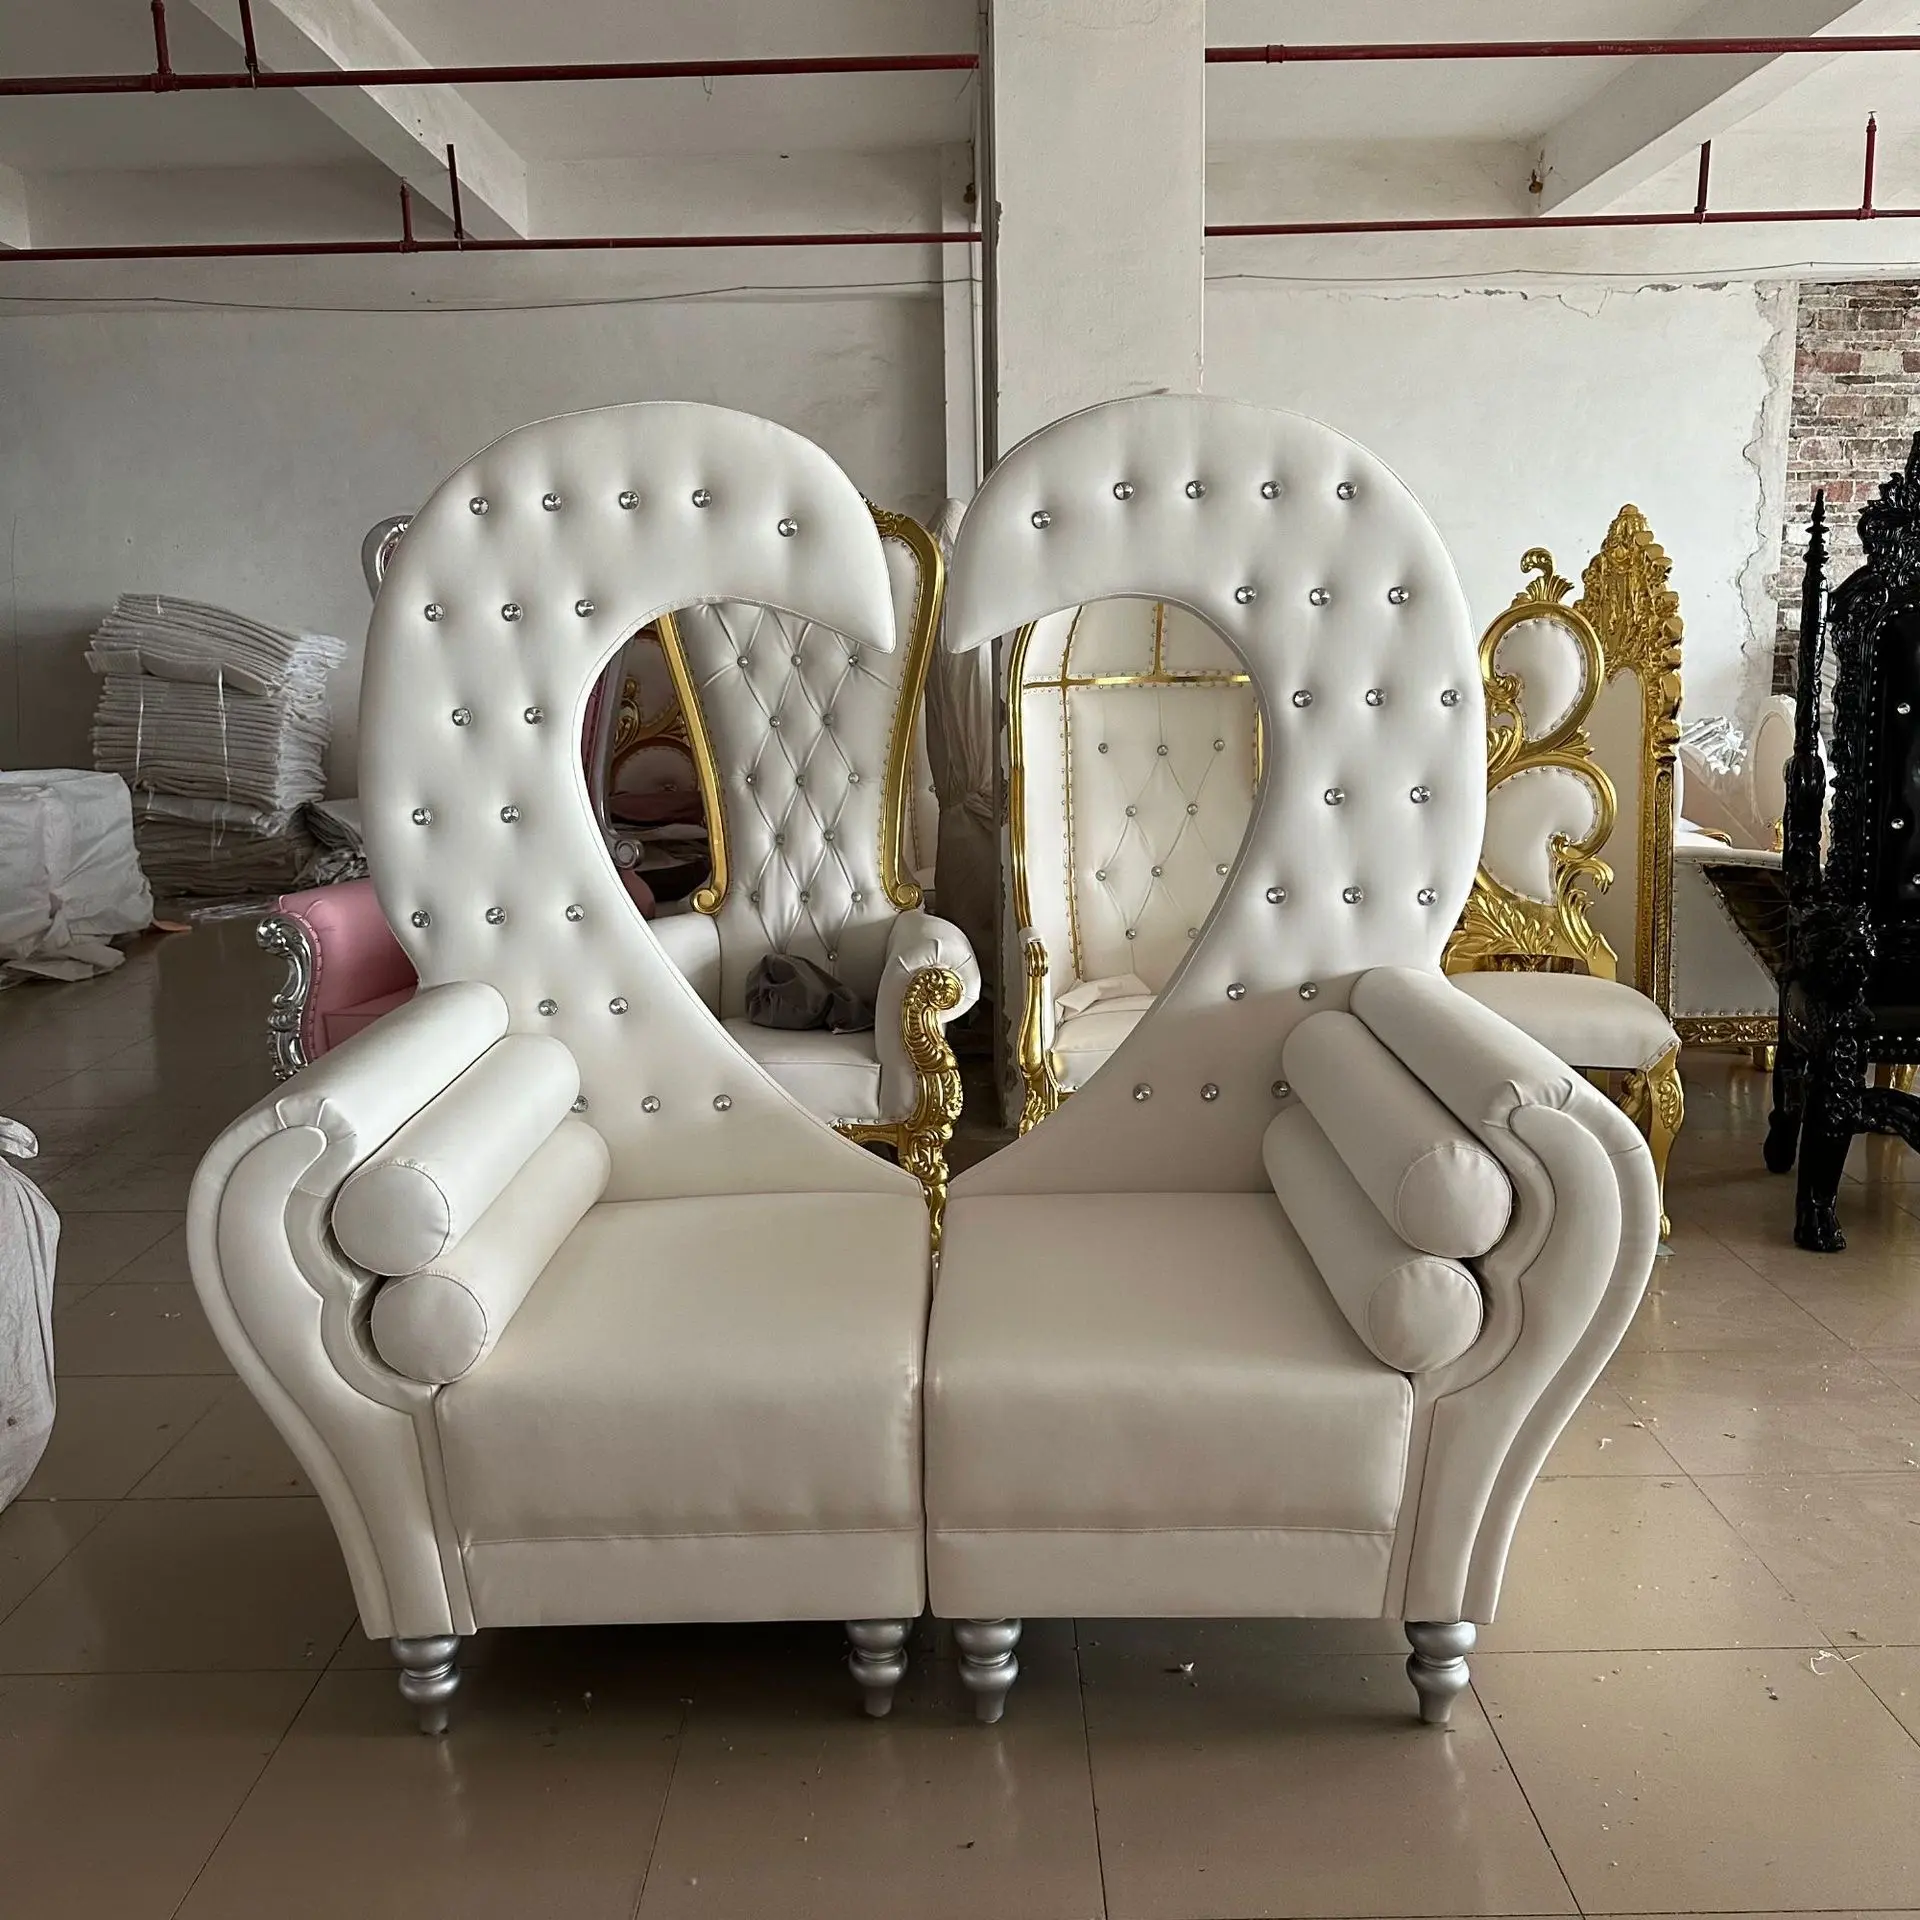 लक्जरी राजकुमारी राजकुमार राजा रानी स्वान आकार बैकरेस्ट दिल के आकार के सफेद डबल लॉवेसट शादी सिंहासन कुर्सी